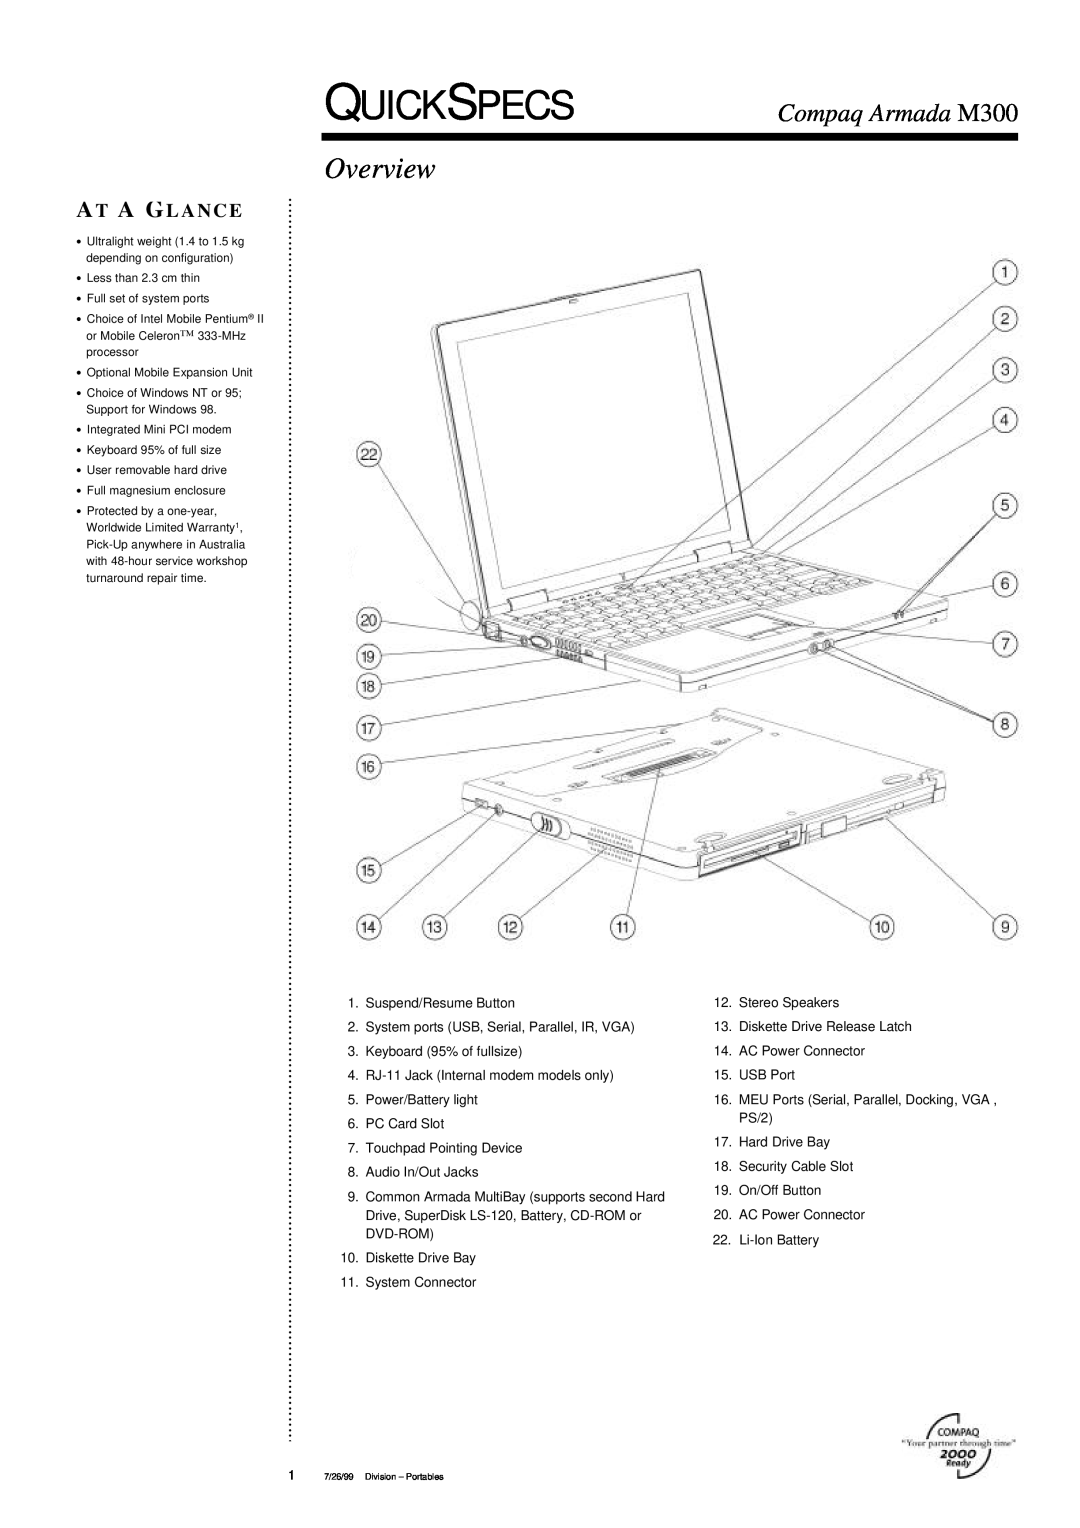 Compaq warranty Quickspecs, Overview, Compaq Armada M300, A T A G L A N C E 